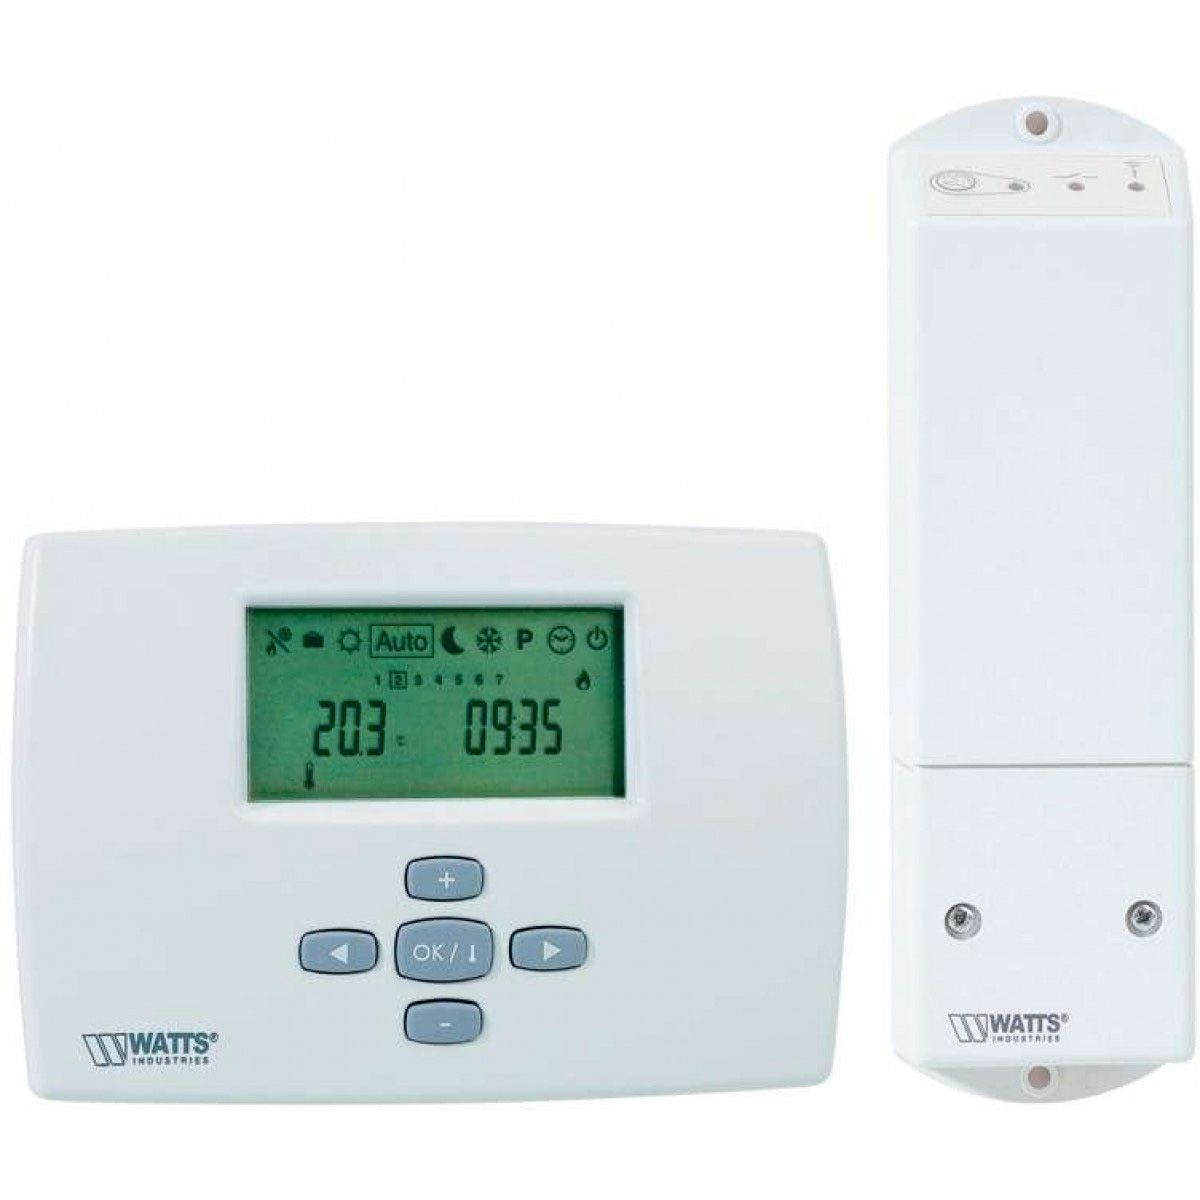 Thermostat Digital pour serres, vente au meilleur prix